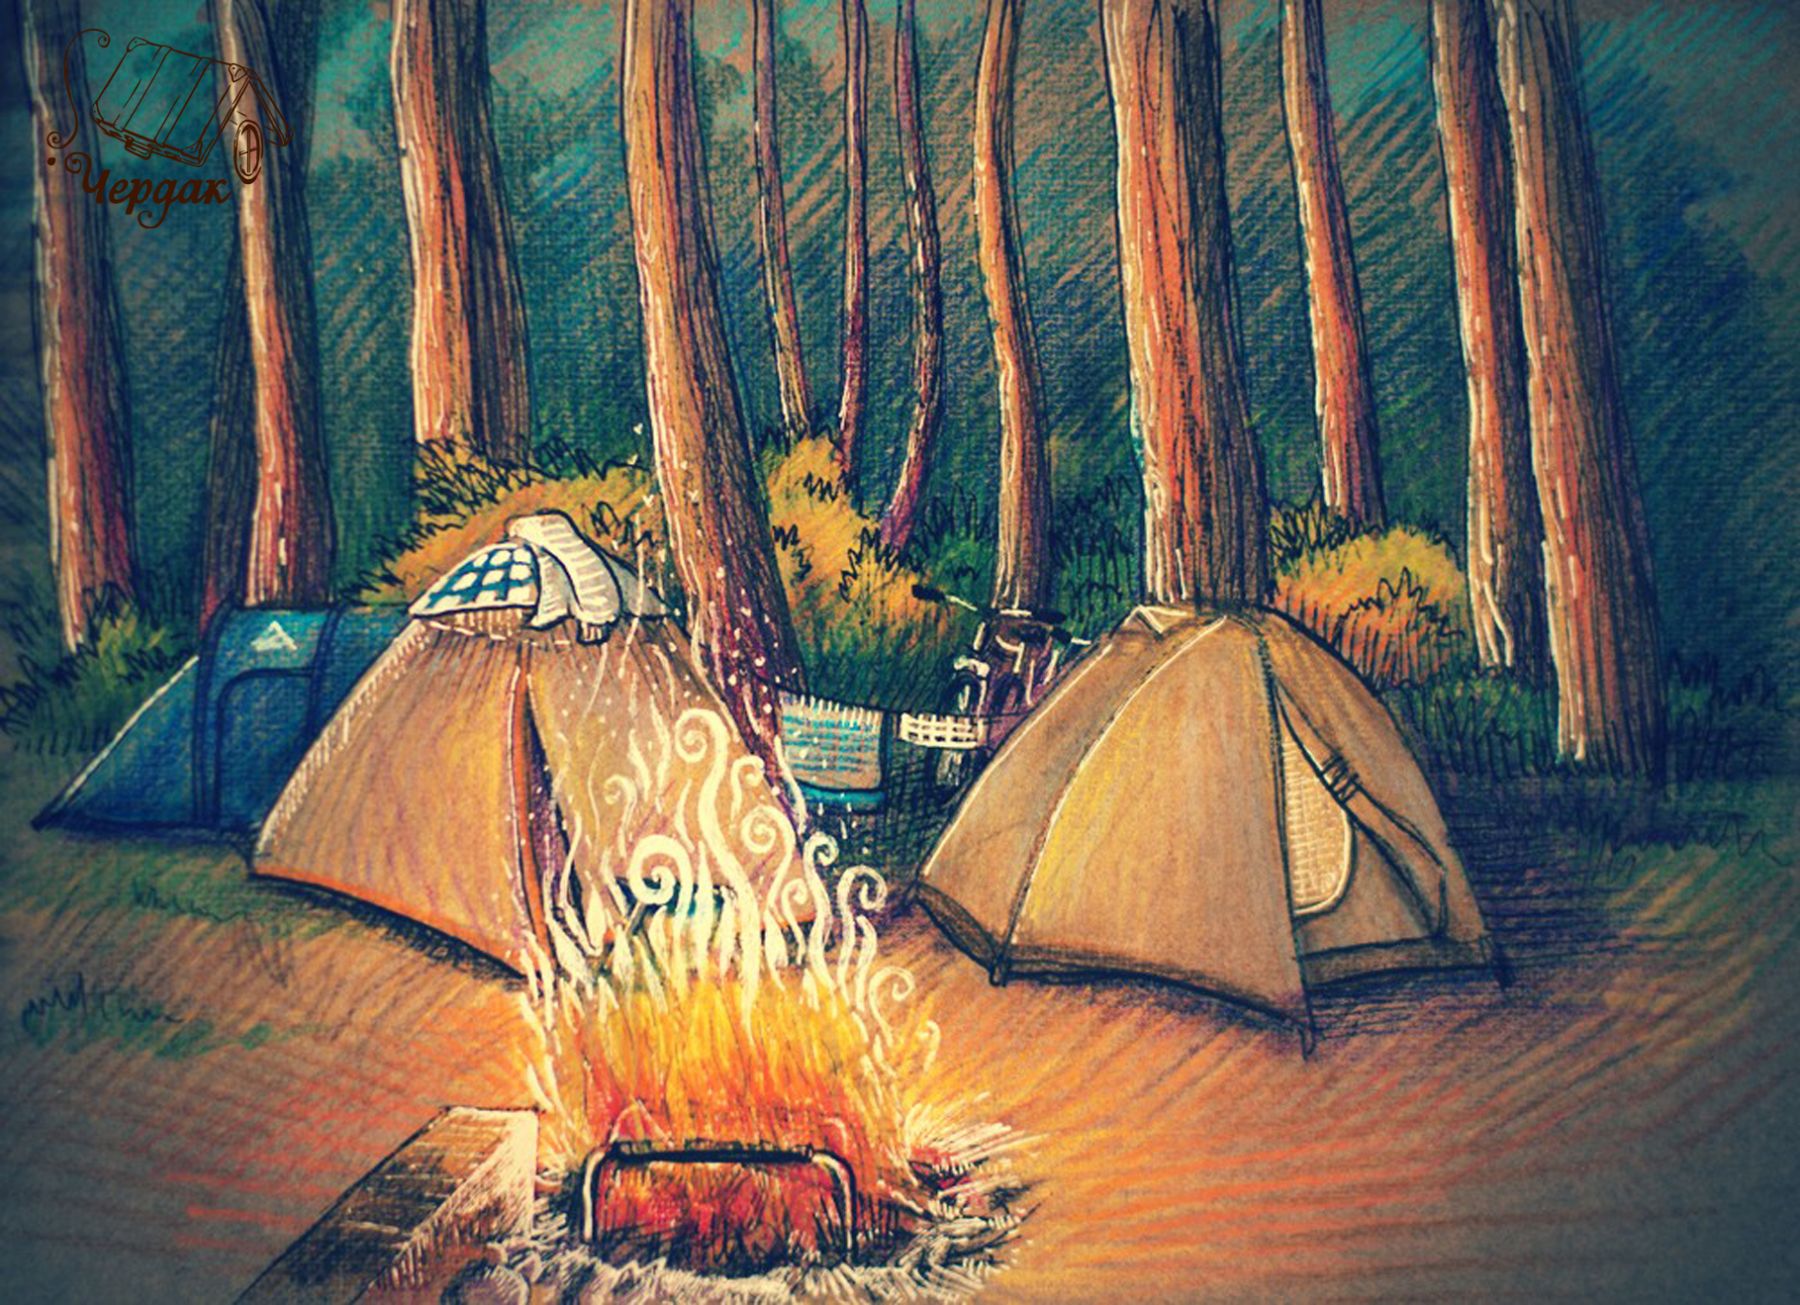 Нарисованная палатка в лесу